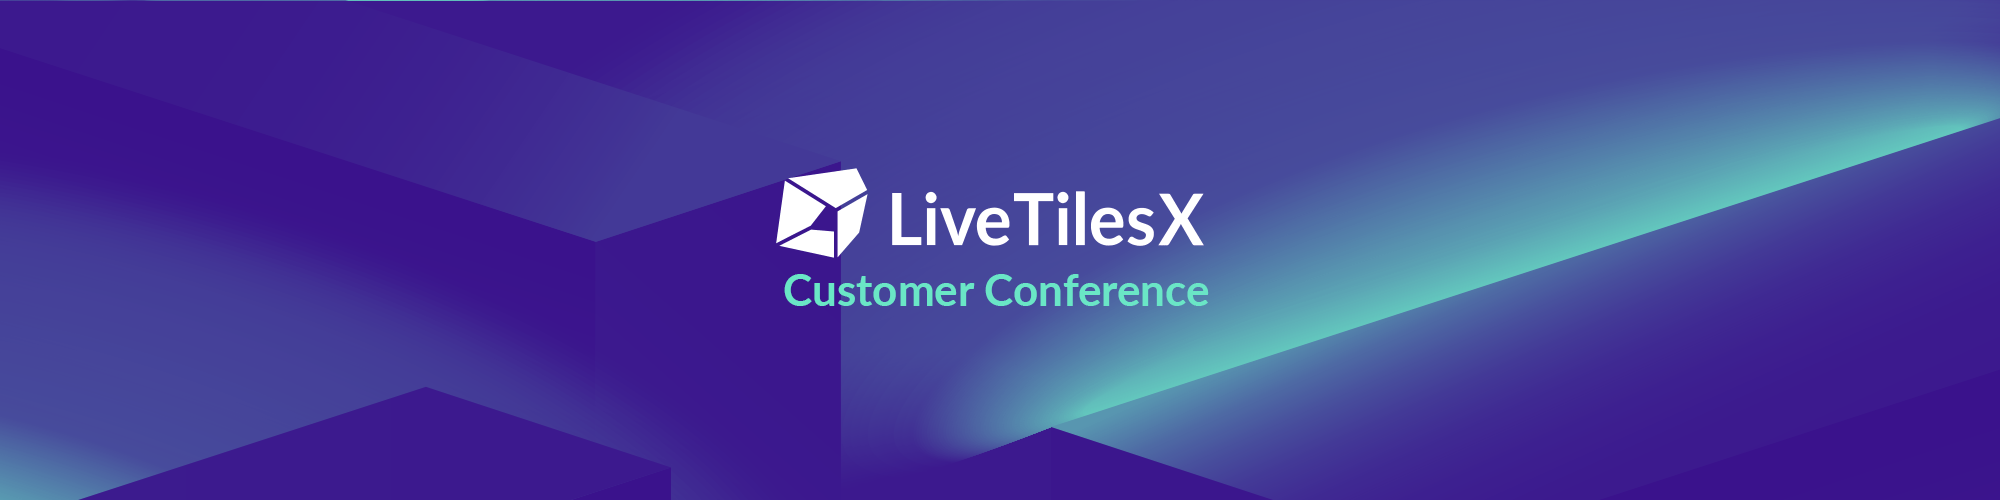 LiveTilesX Customer Conference banner